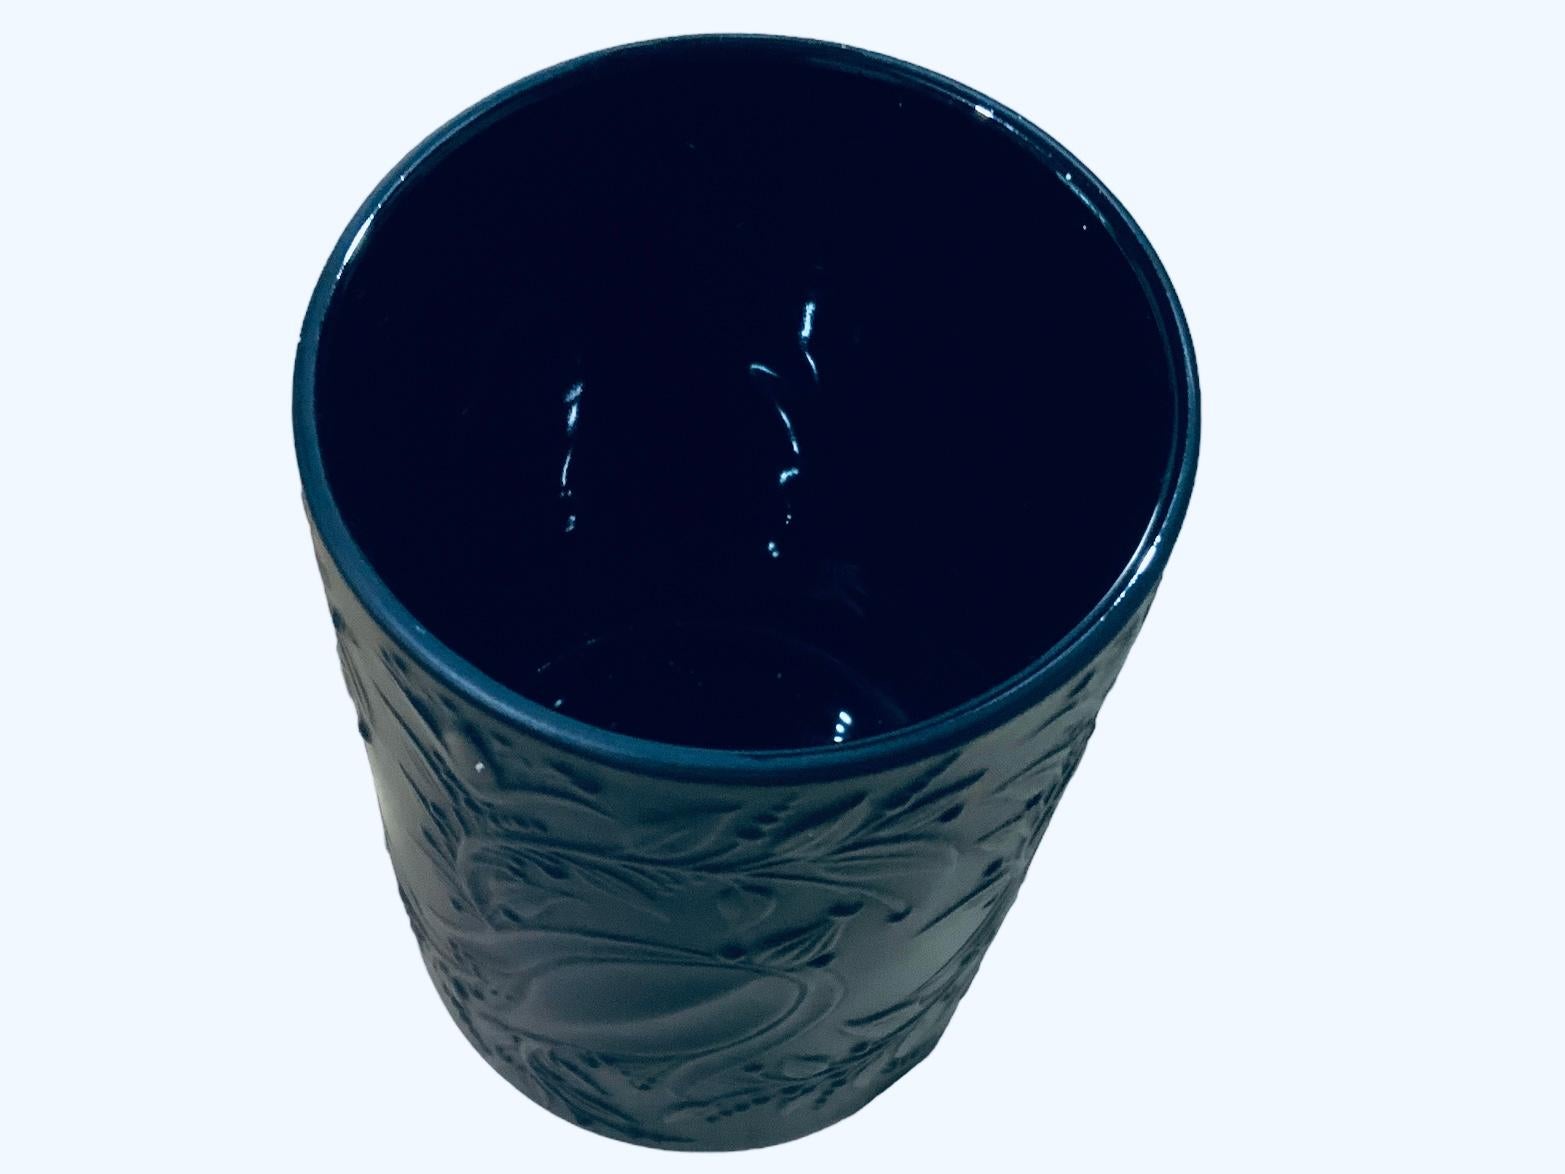 Questo è un vaso piccolo in porcellana nera dello Studio Rosenthal Bjorn Winblad. Raffigura un piccolo vaso cilindrico con fiori e foglie in rilievo. Sotto la base c'è il marchio Rosenthal Studio e la firma di Bjorn Winblad.